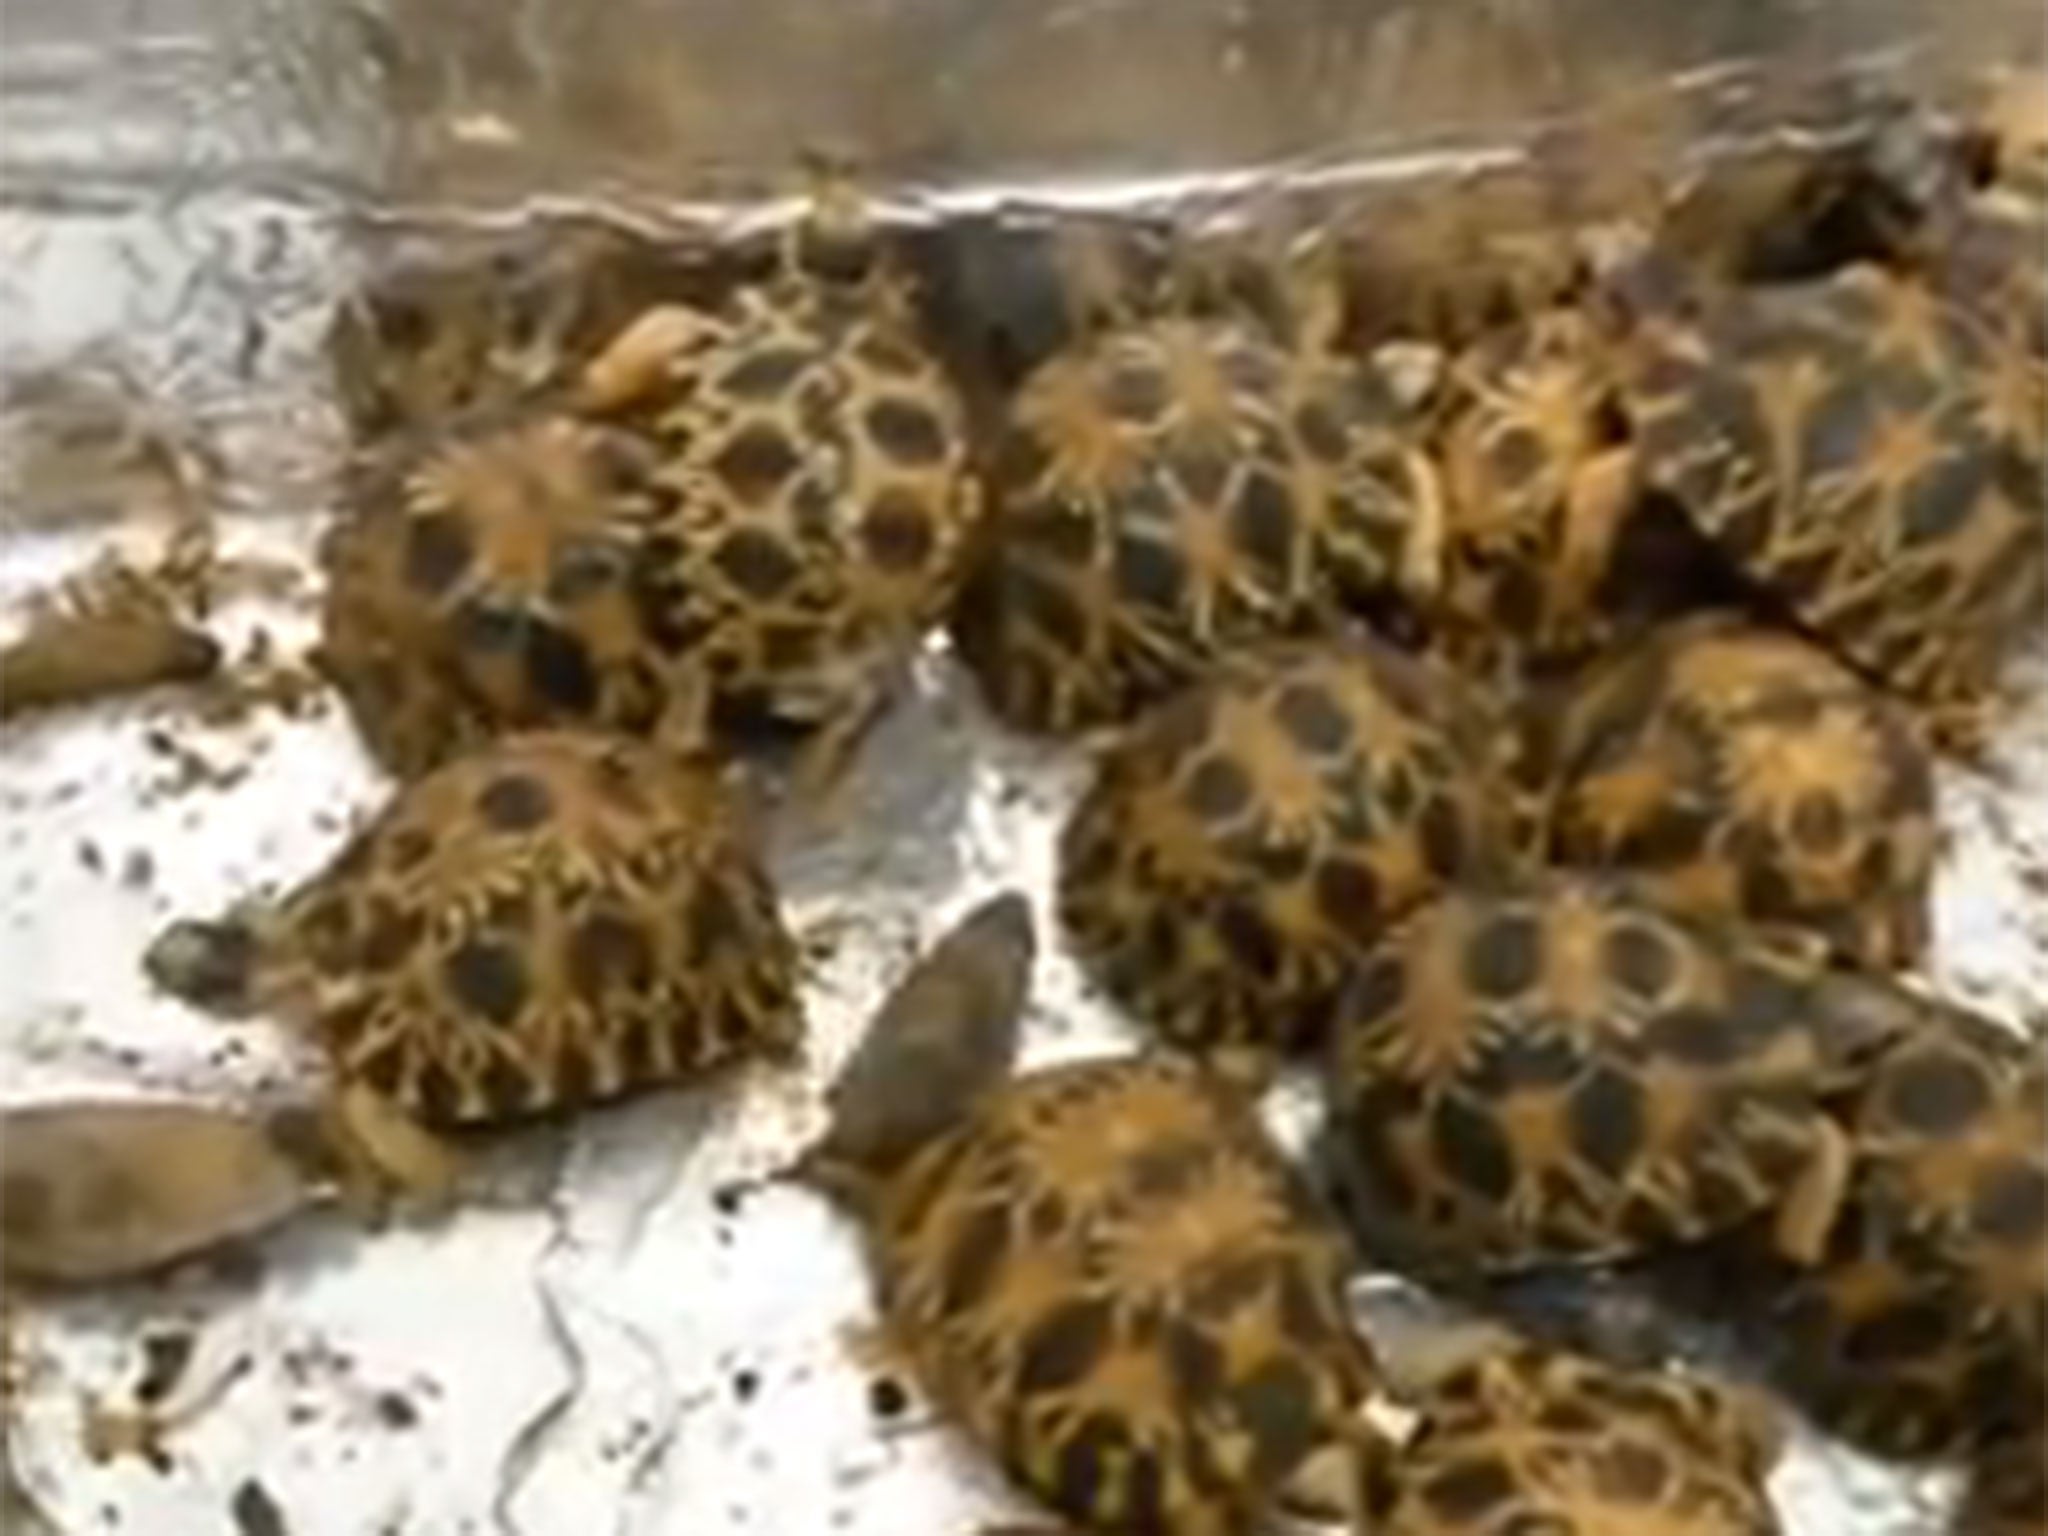 170 rare baby tortoises seized at Paris airport.